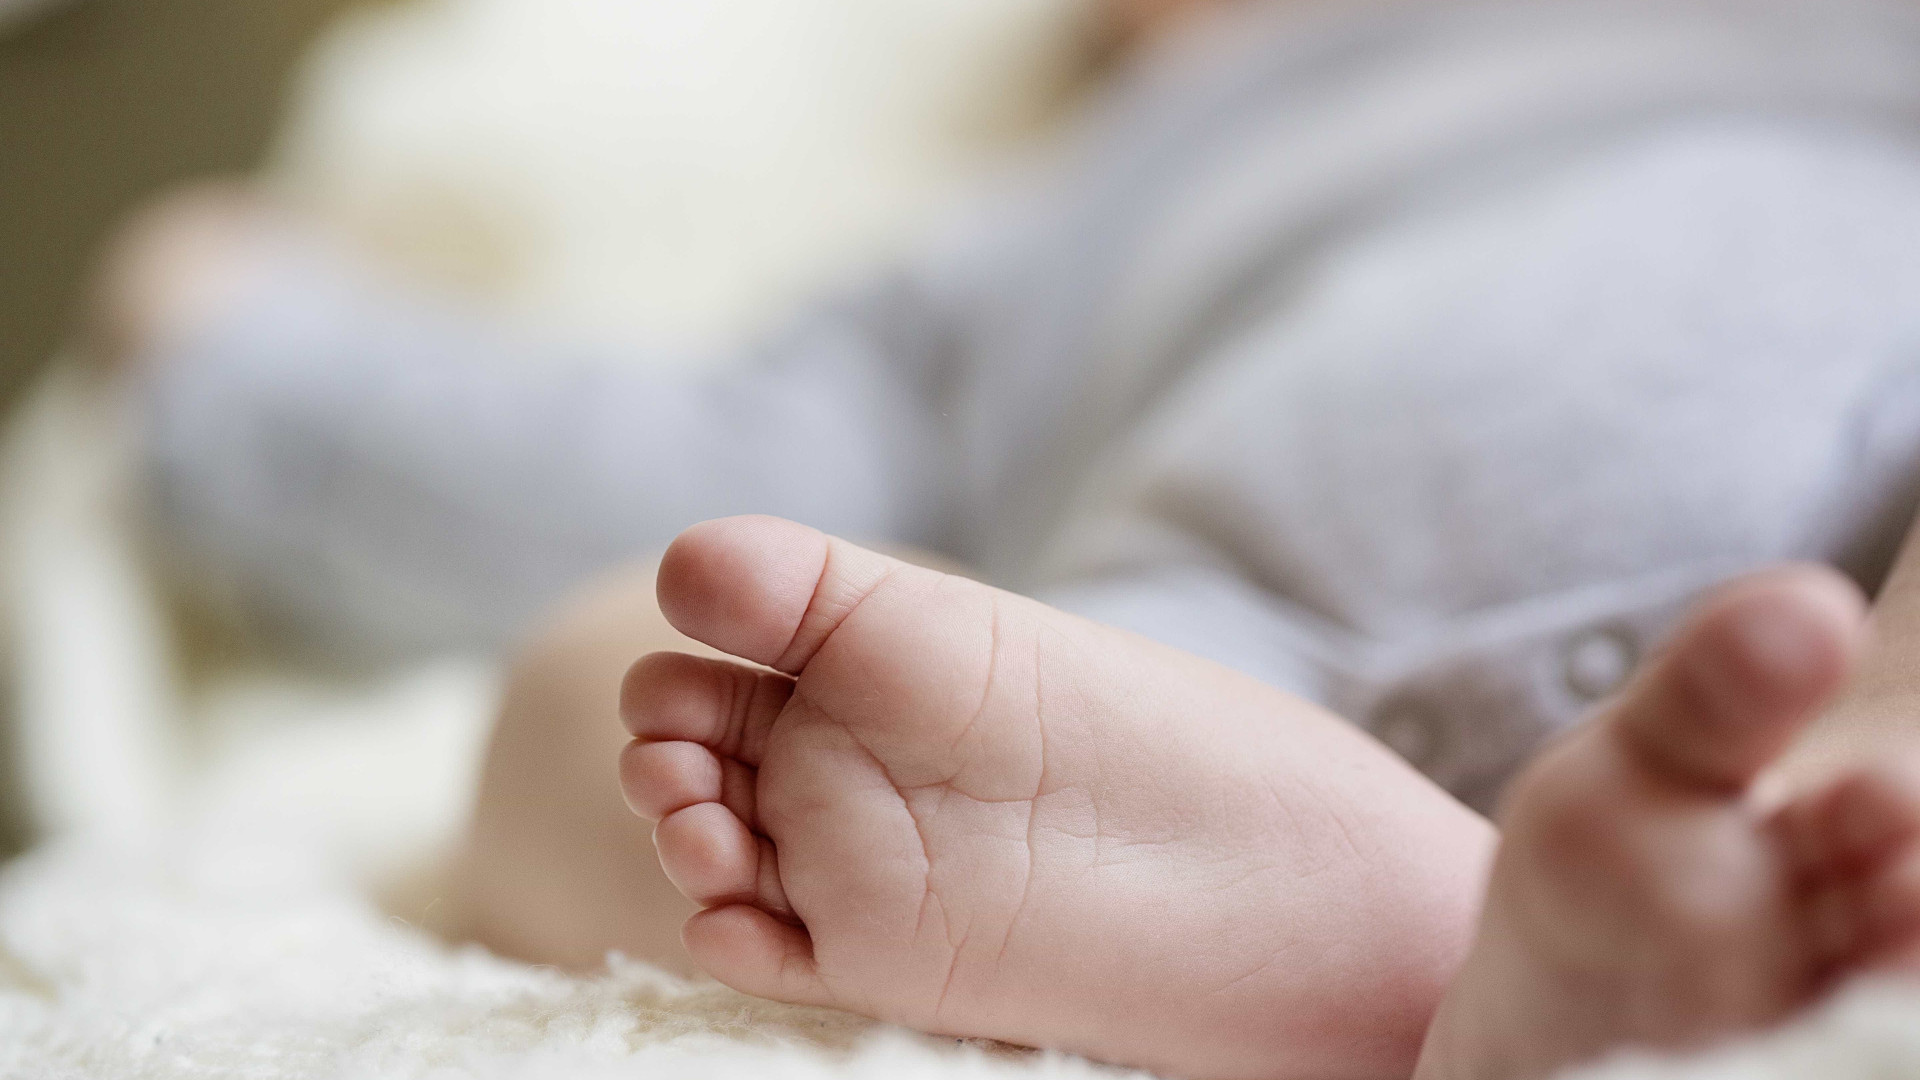 Médica é condenada por causar sequelas em bebê durante parto domiciliar